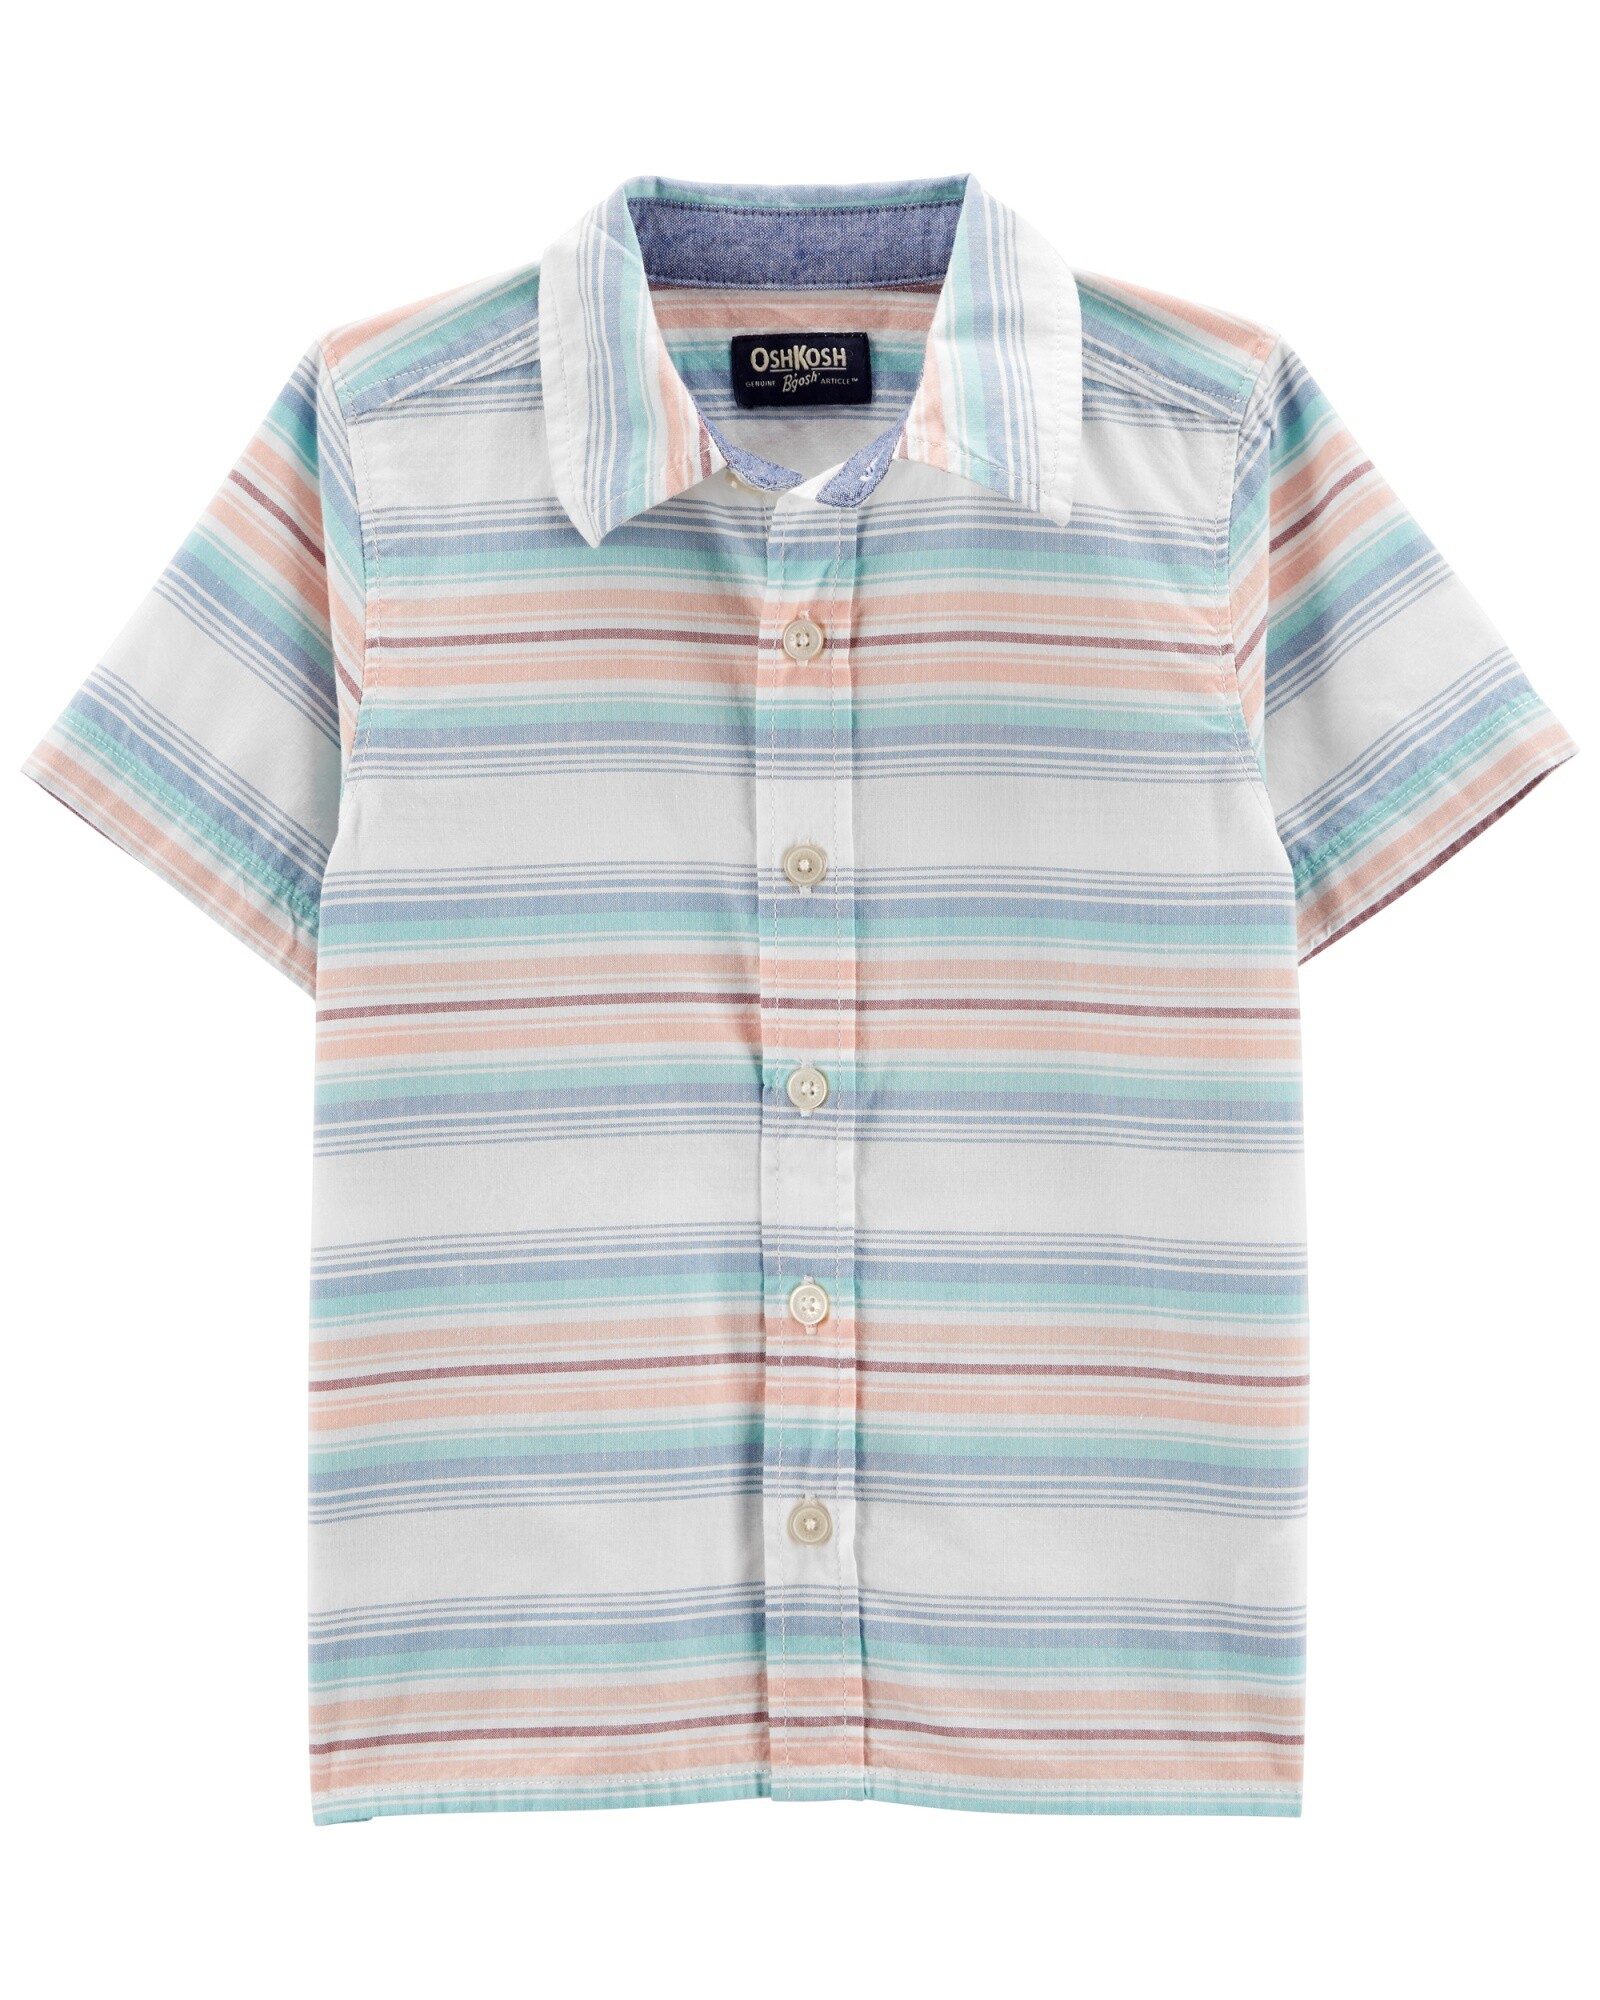 Camisa de algodón, diseño a rayas. Talles 2-5T Sin color